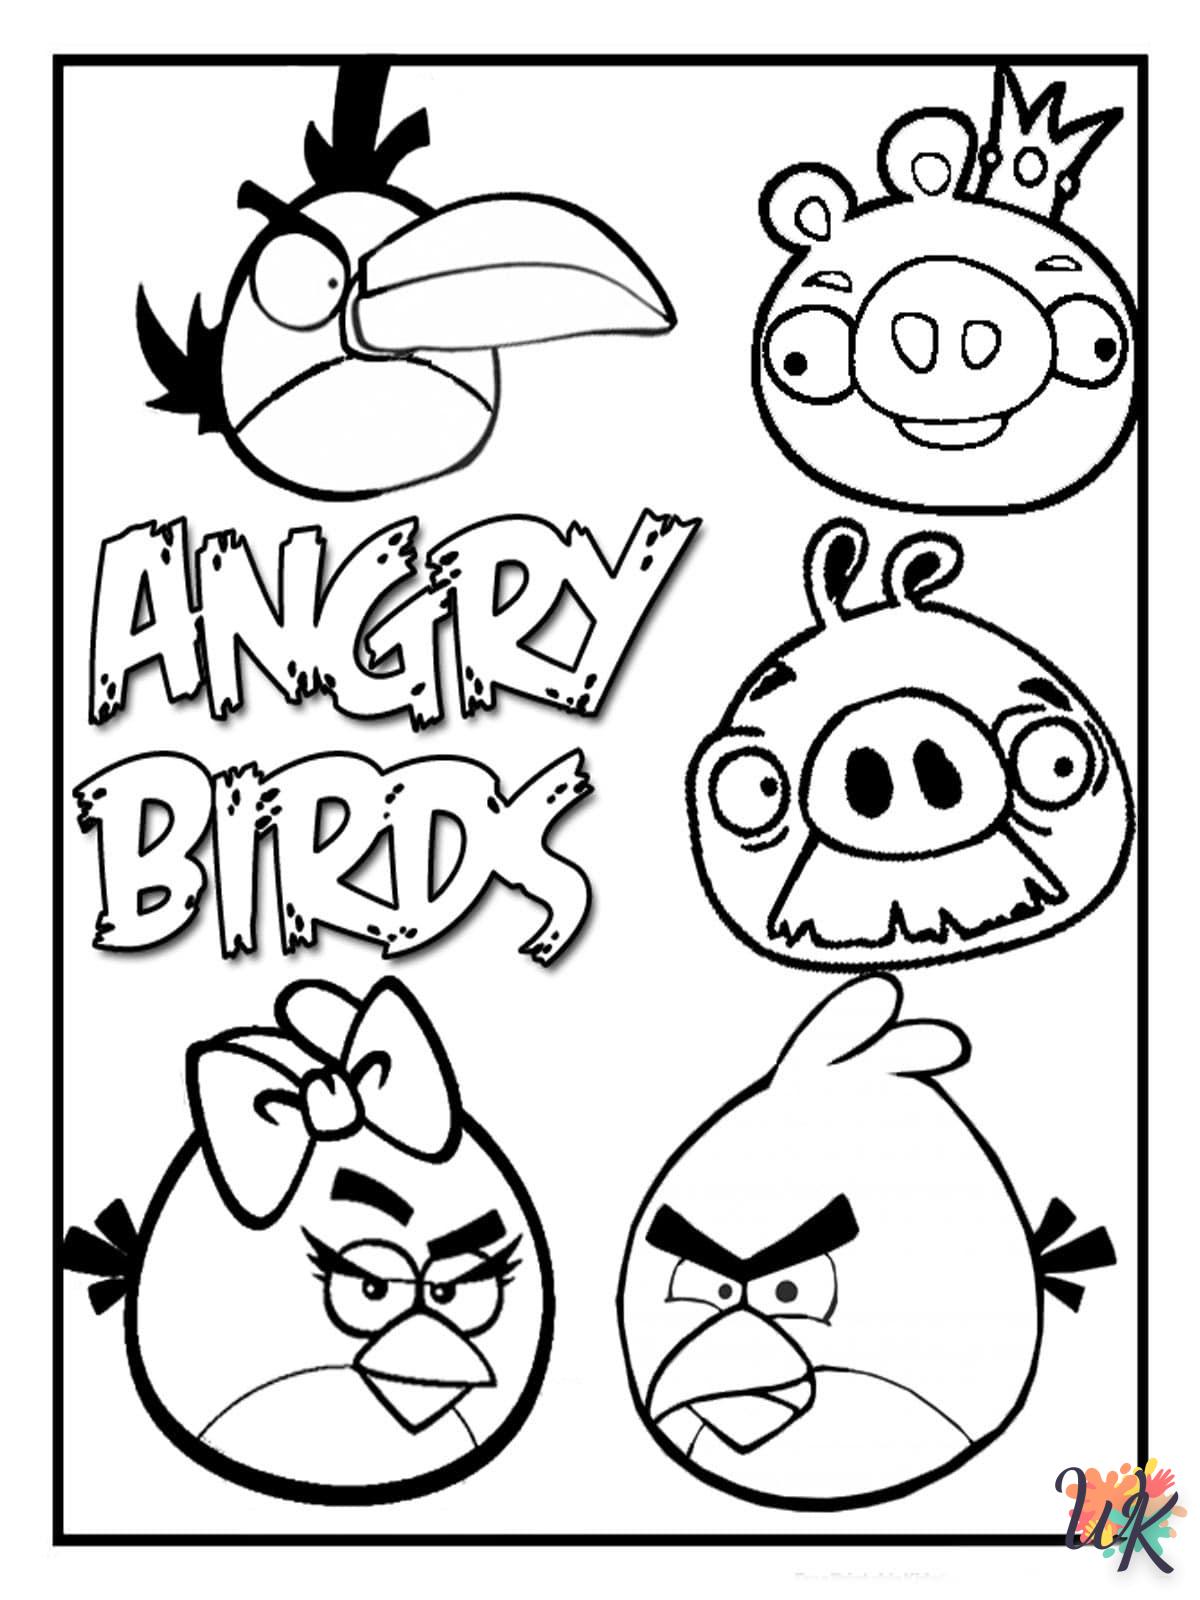 coloriage Angry Birds  7 ans en ligne gratuit à imprimer 1